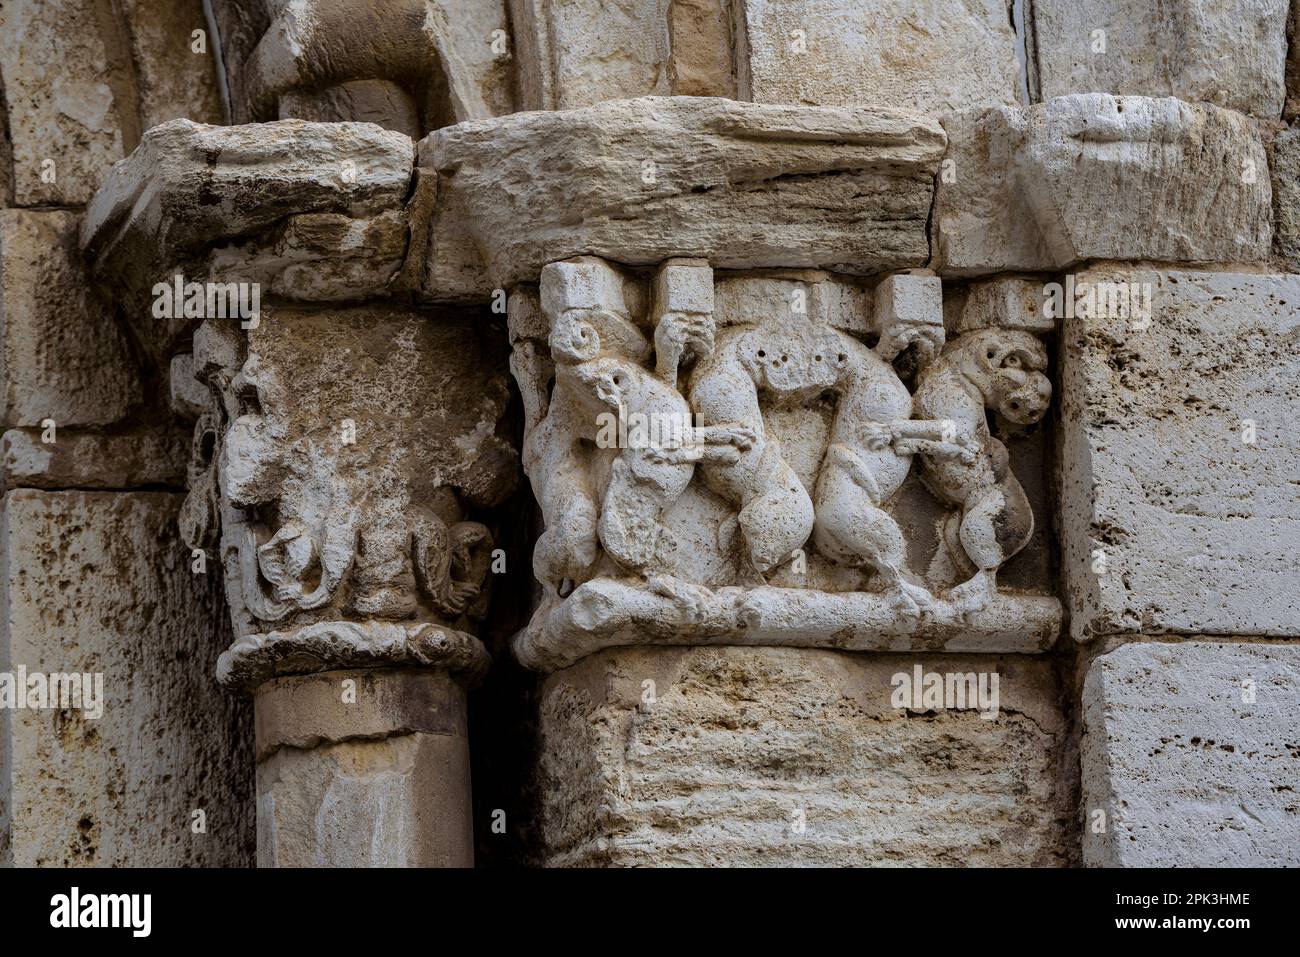 Particolare di una capitale scolpita nel Monastero di Pedralbes (Barcellona, Catalogna, Spagna) ESP: Detalle de un capitel esculpido en el Monasterio Pedralbes Foto Stock